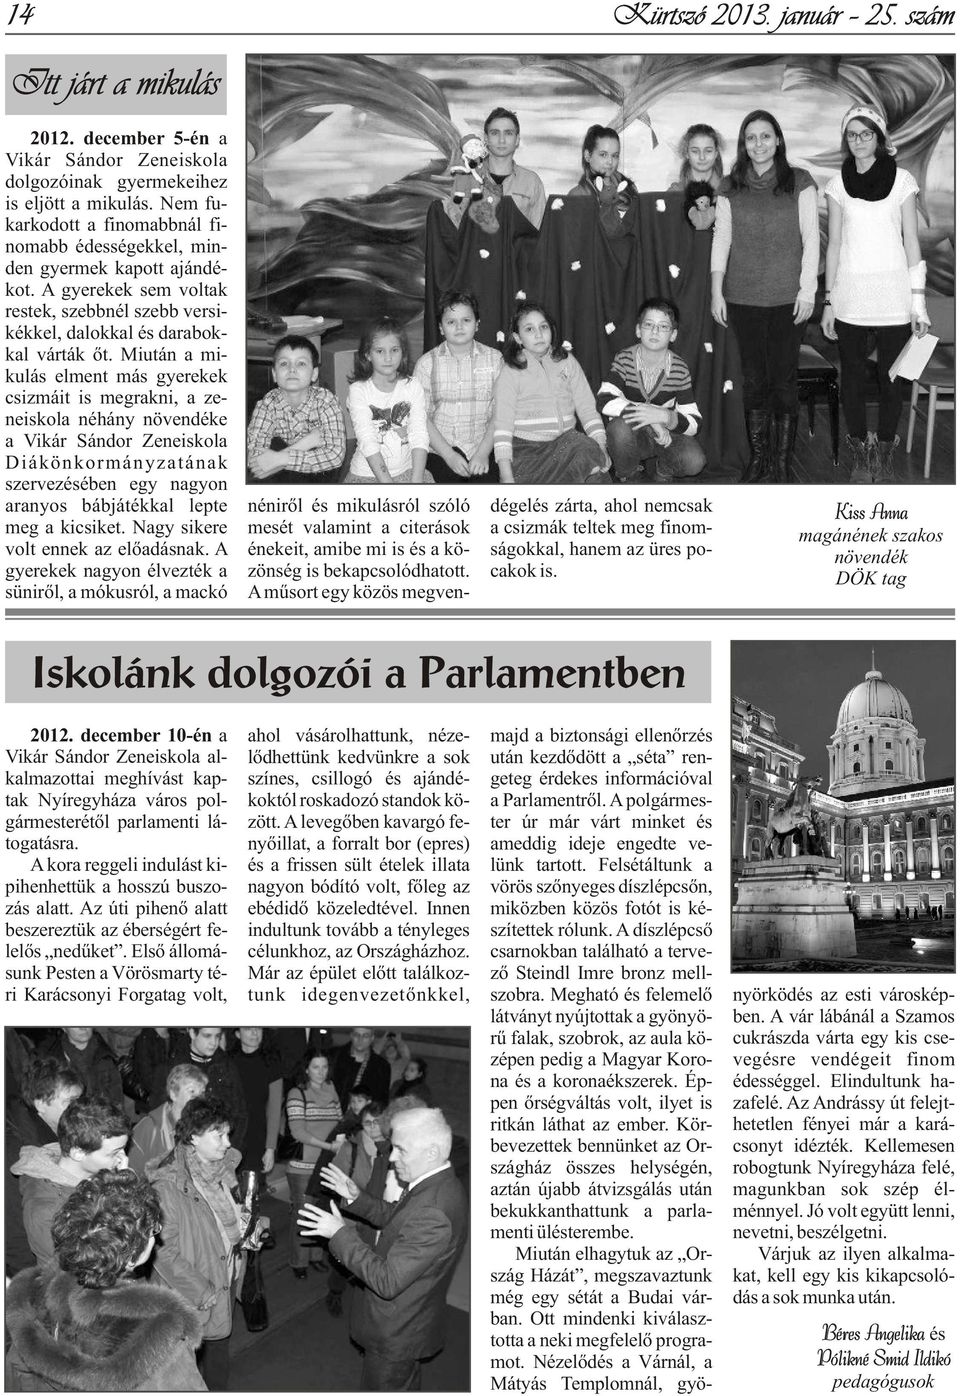 bekapcsolódhatott. cakok is. A mûsort egy közös megven- 2012. december 5-én a Vikár Sándor Zeneiskola dolgozóinak gyermekeihez is eljött a mikulás.